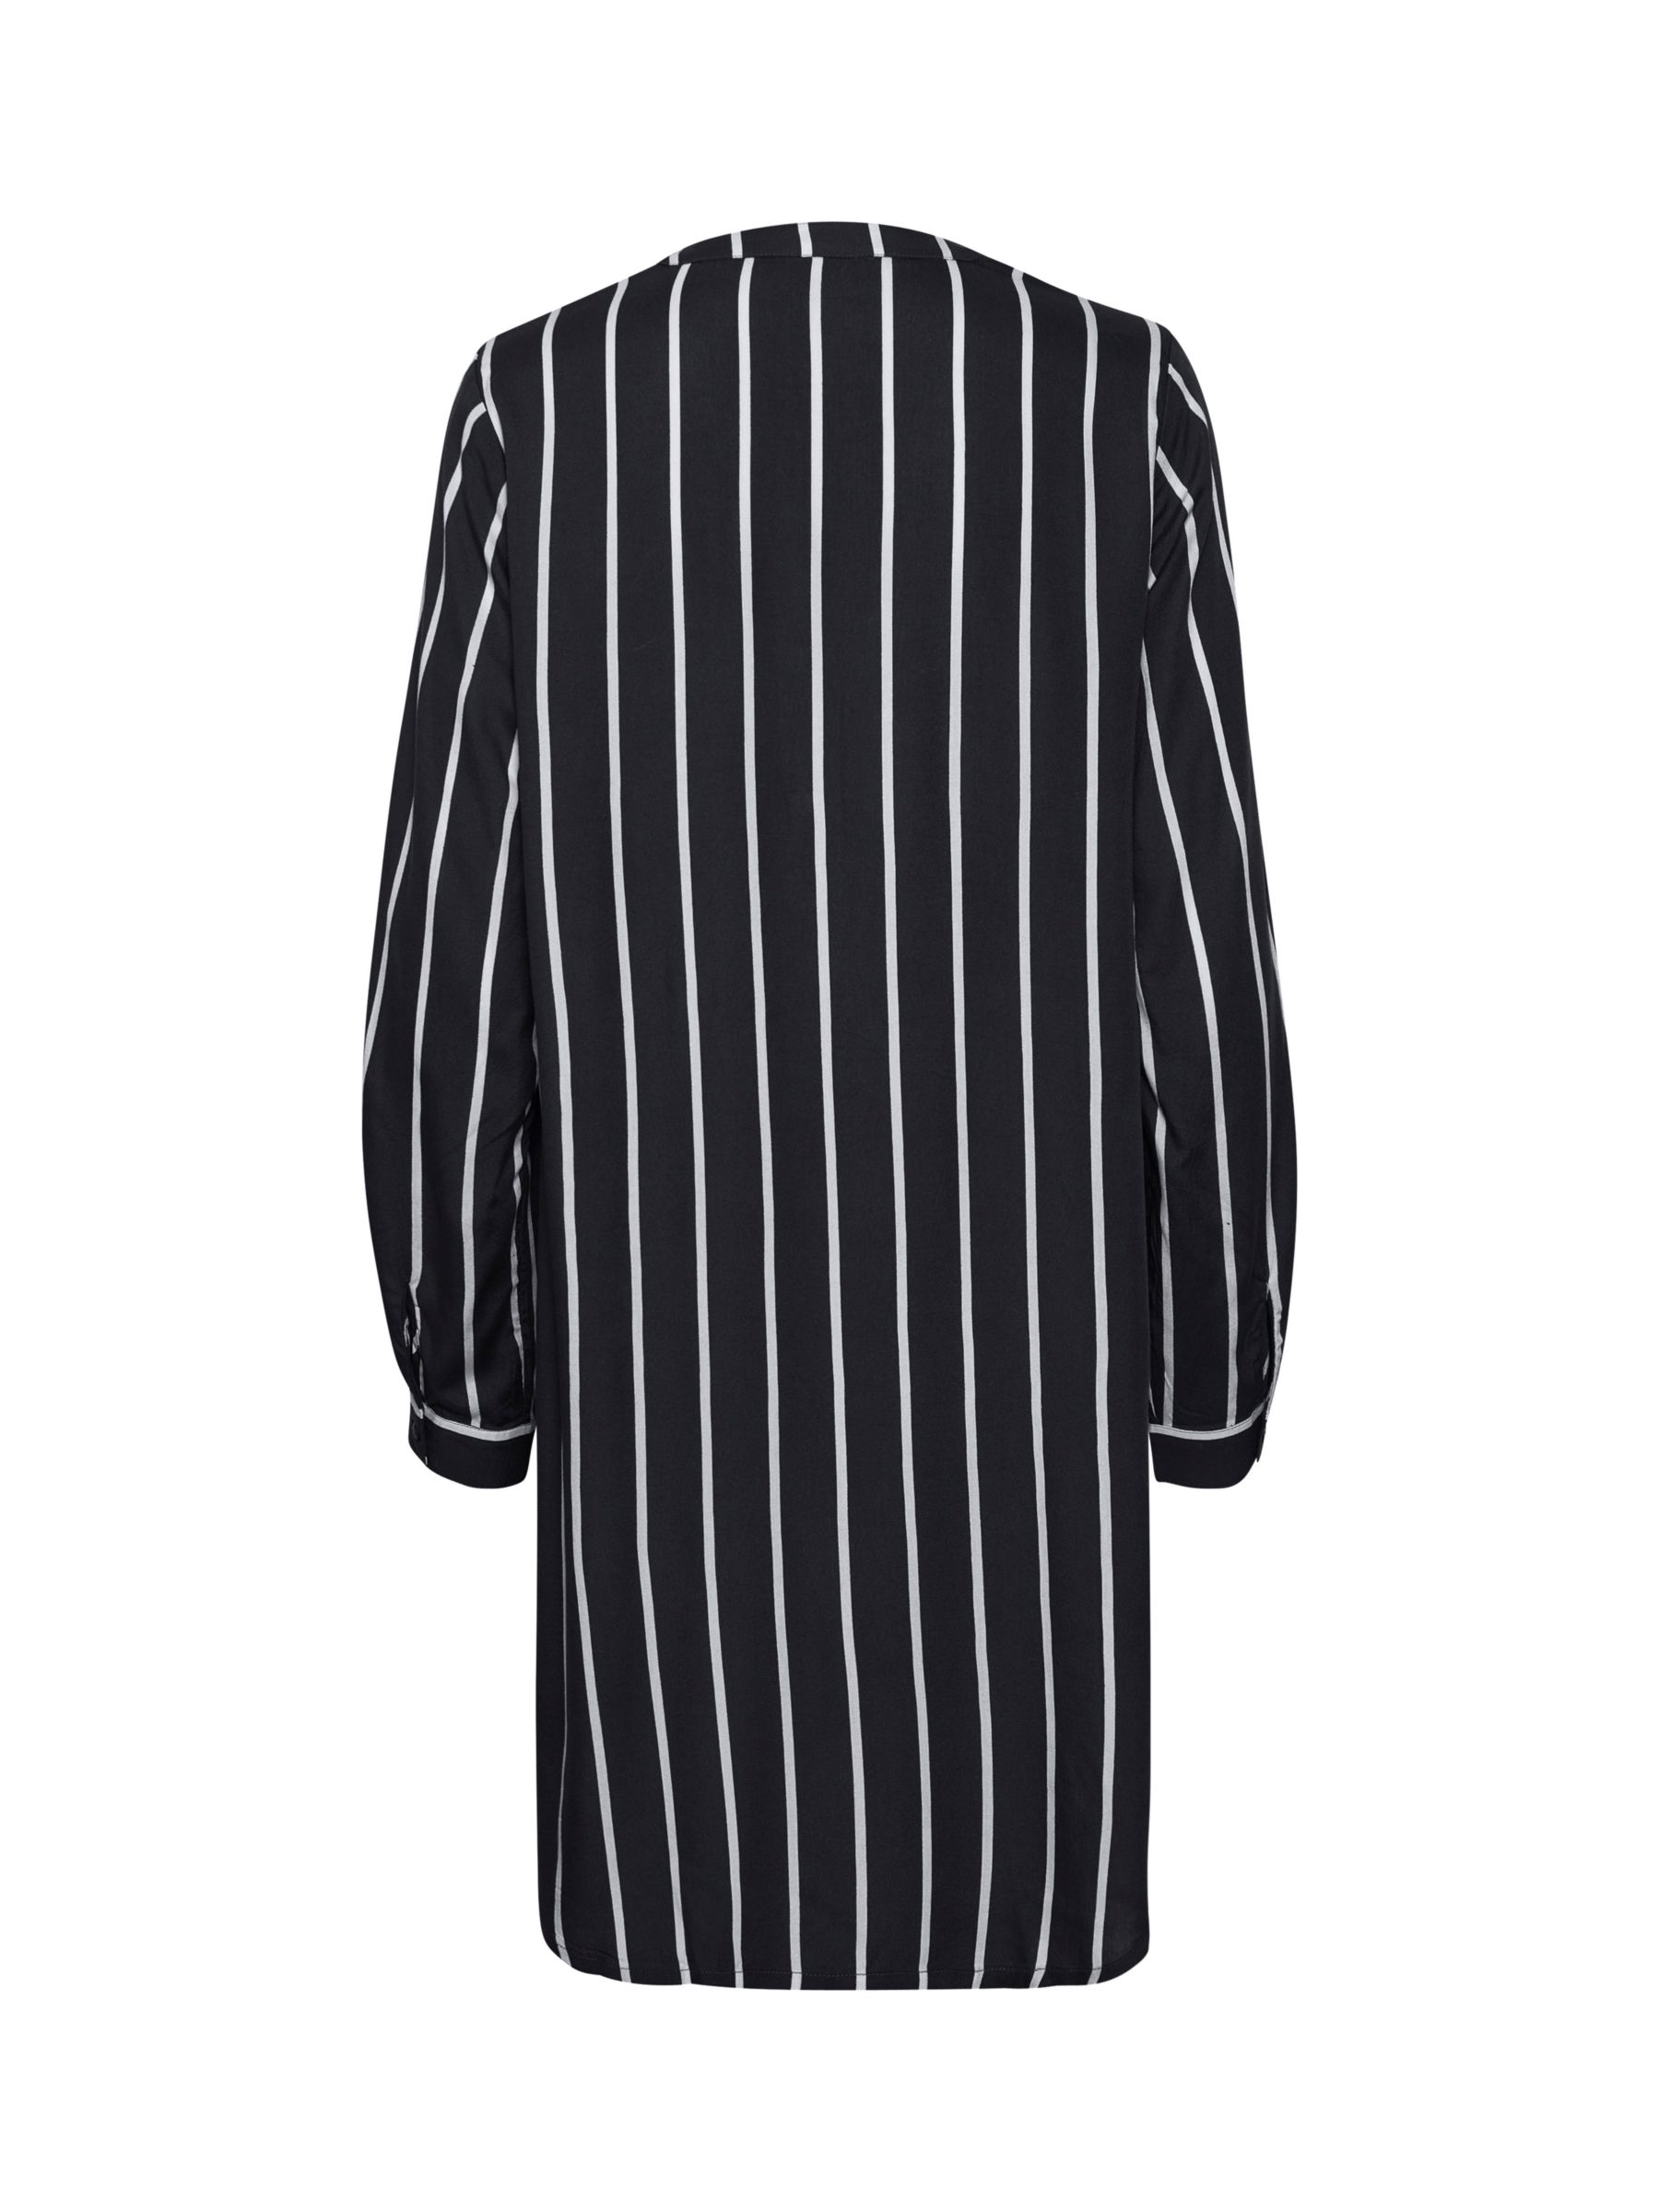 KAFFE Marana Striped Shirt Dress, Black/Chalk, 14